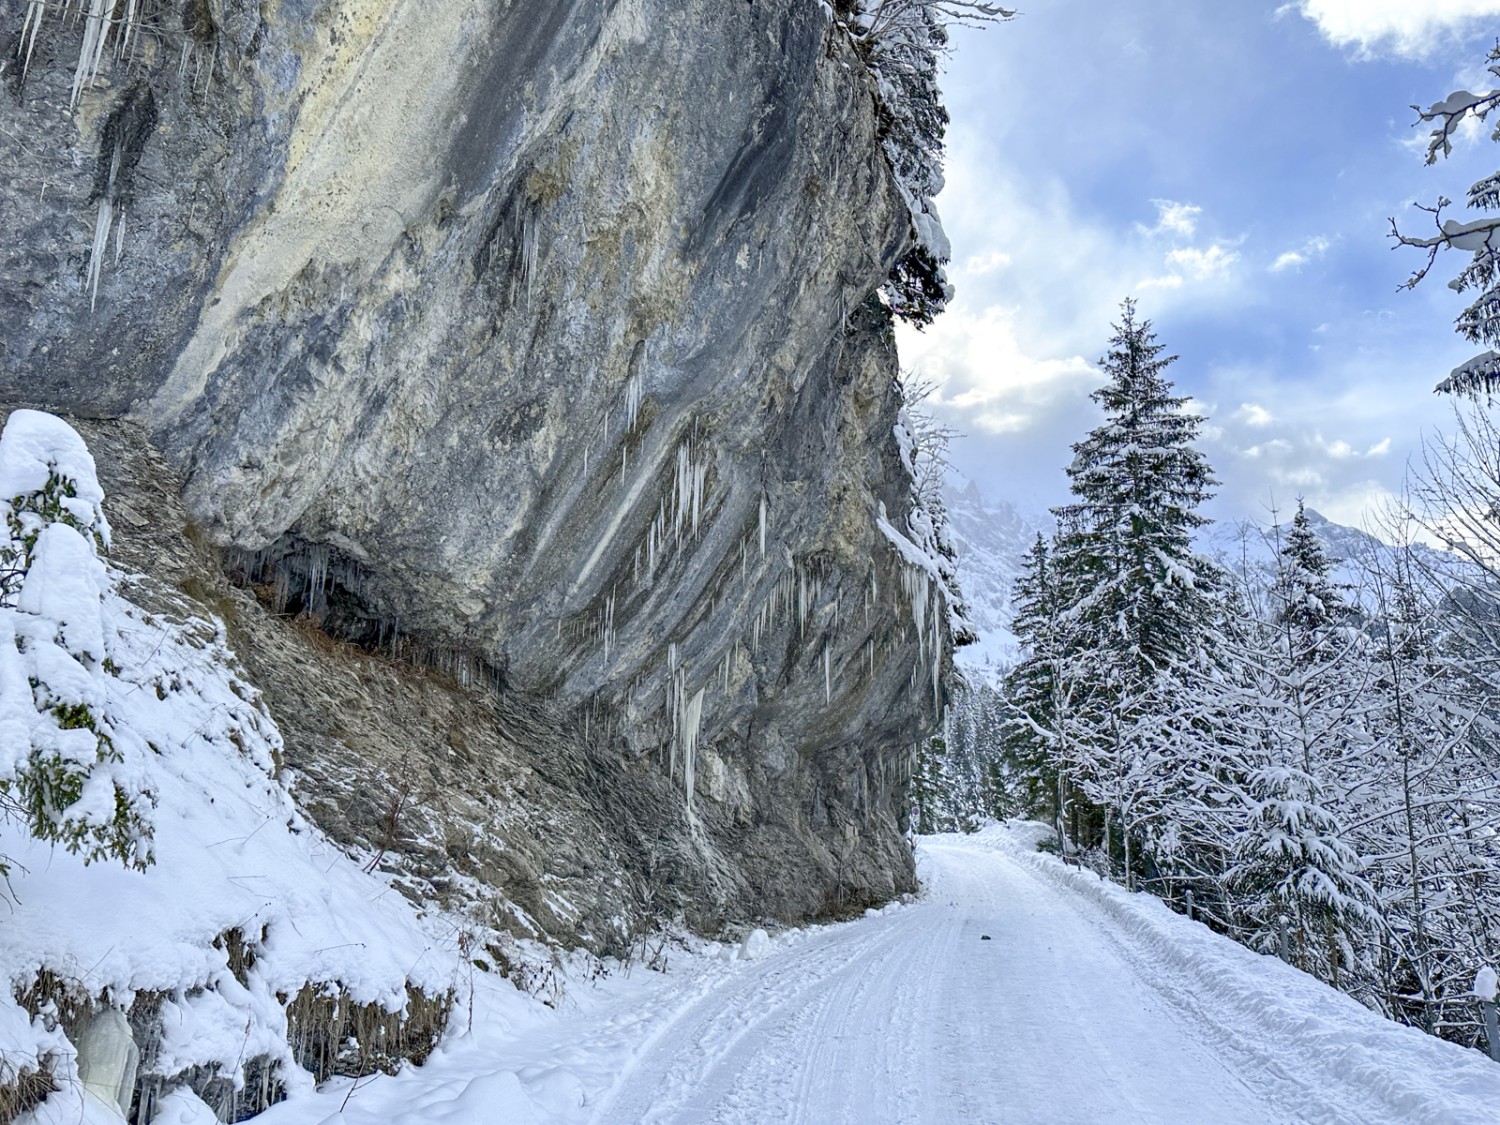 Vorsicht Eisschlag! Von der überhängenden Felswand können Eiszapfen abbrechen. Bild: Thomas Gloor